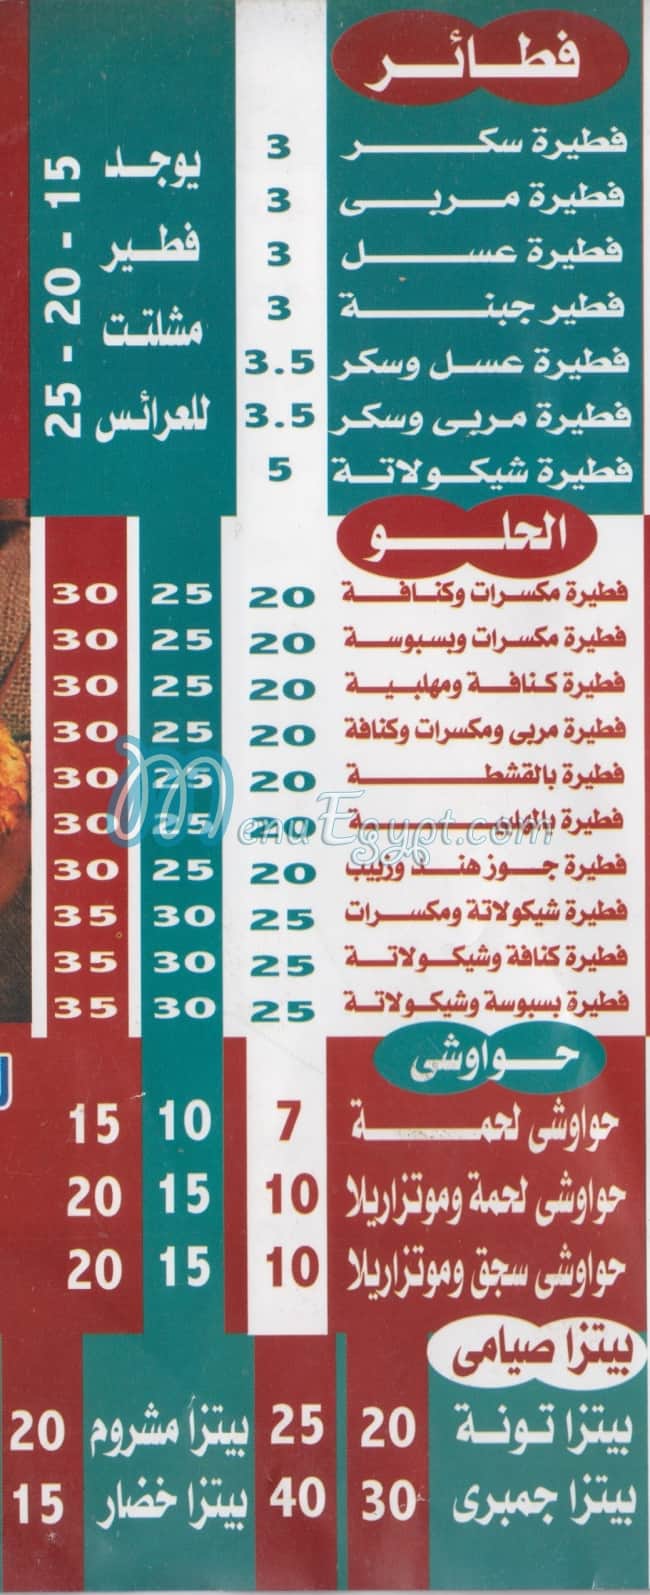 Pizza El Amir menu Egypt